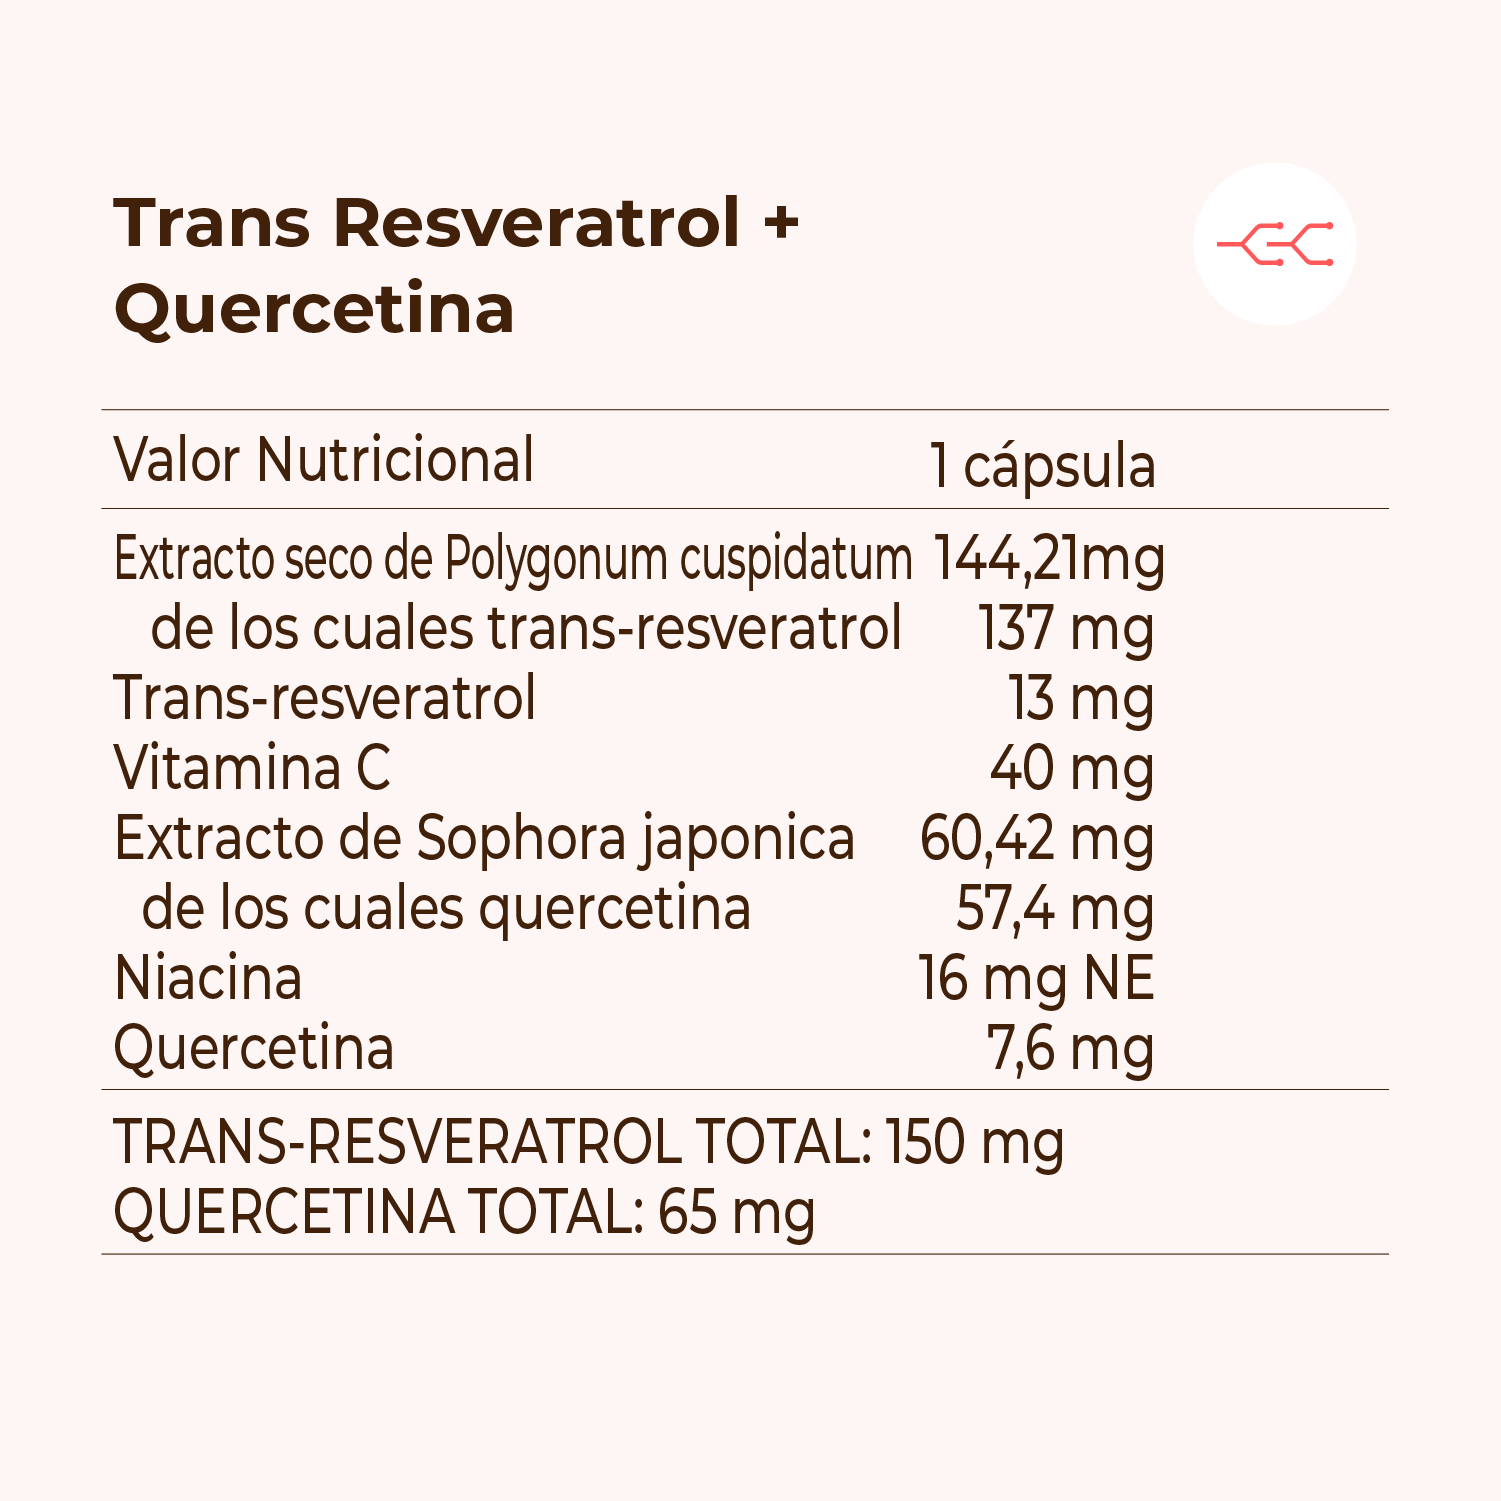 Trans Resveratrol + Quercetina